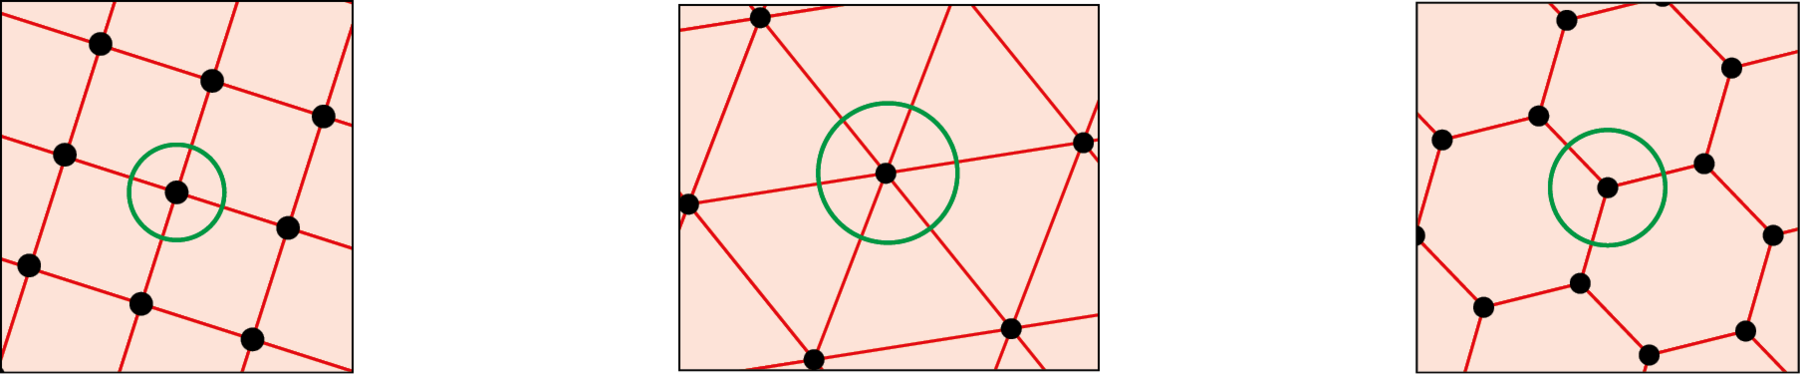 Ilustração. Quadrado maior dividido em quatro quadrados menores. No centro, nos pontos de encontro dos quadrados menores, o ponto está circulado de verde. Ilustração. Hexágono regular dividido em seis triângulos congruentes. No centro, nos pontos de encontro dos triângulos, o ponto está circulado de  verde. Ilustração. Malha formada por hexágonos regulares. No centro, nos pontos de encontro dos hexágonos, o ponto está circulado de verde.